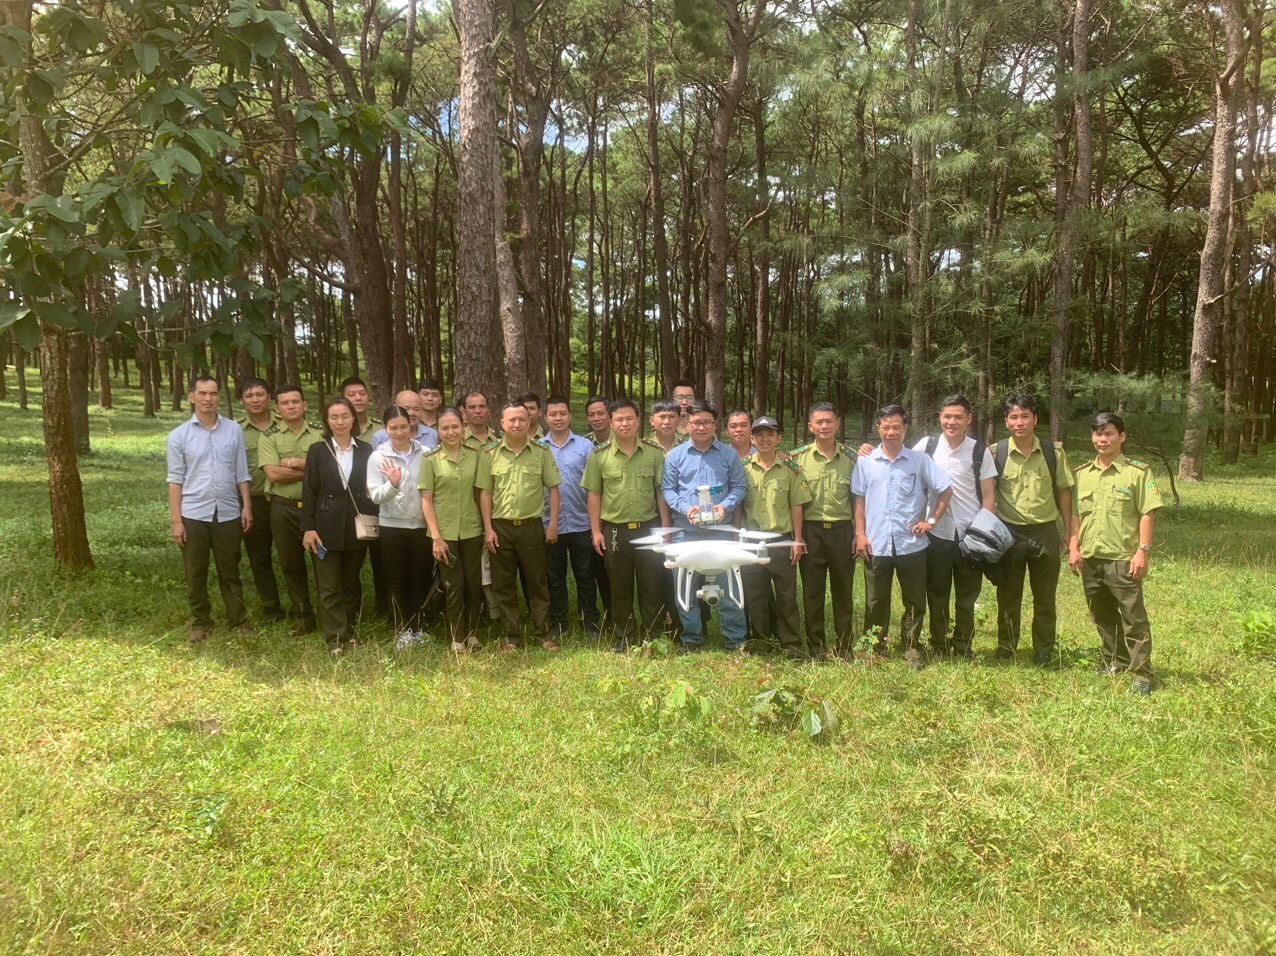 Chi cục Kiểm lâm triển khai sử dụng thiết bị bay flycam trong công tác quản lý bảo vệ rừng trên địa bản tỉnh